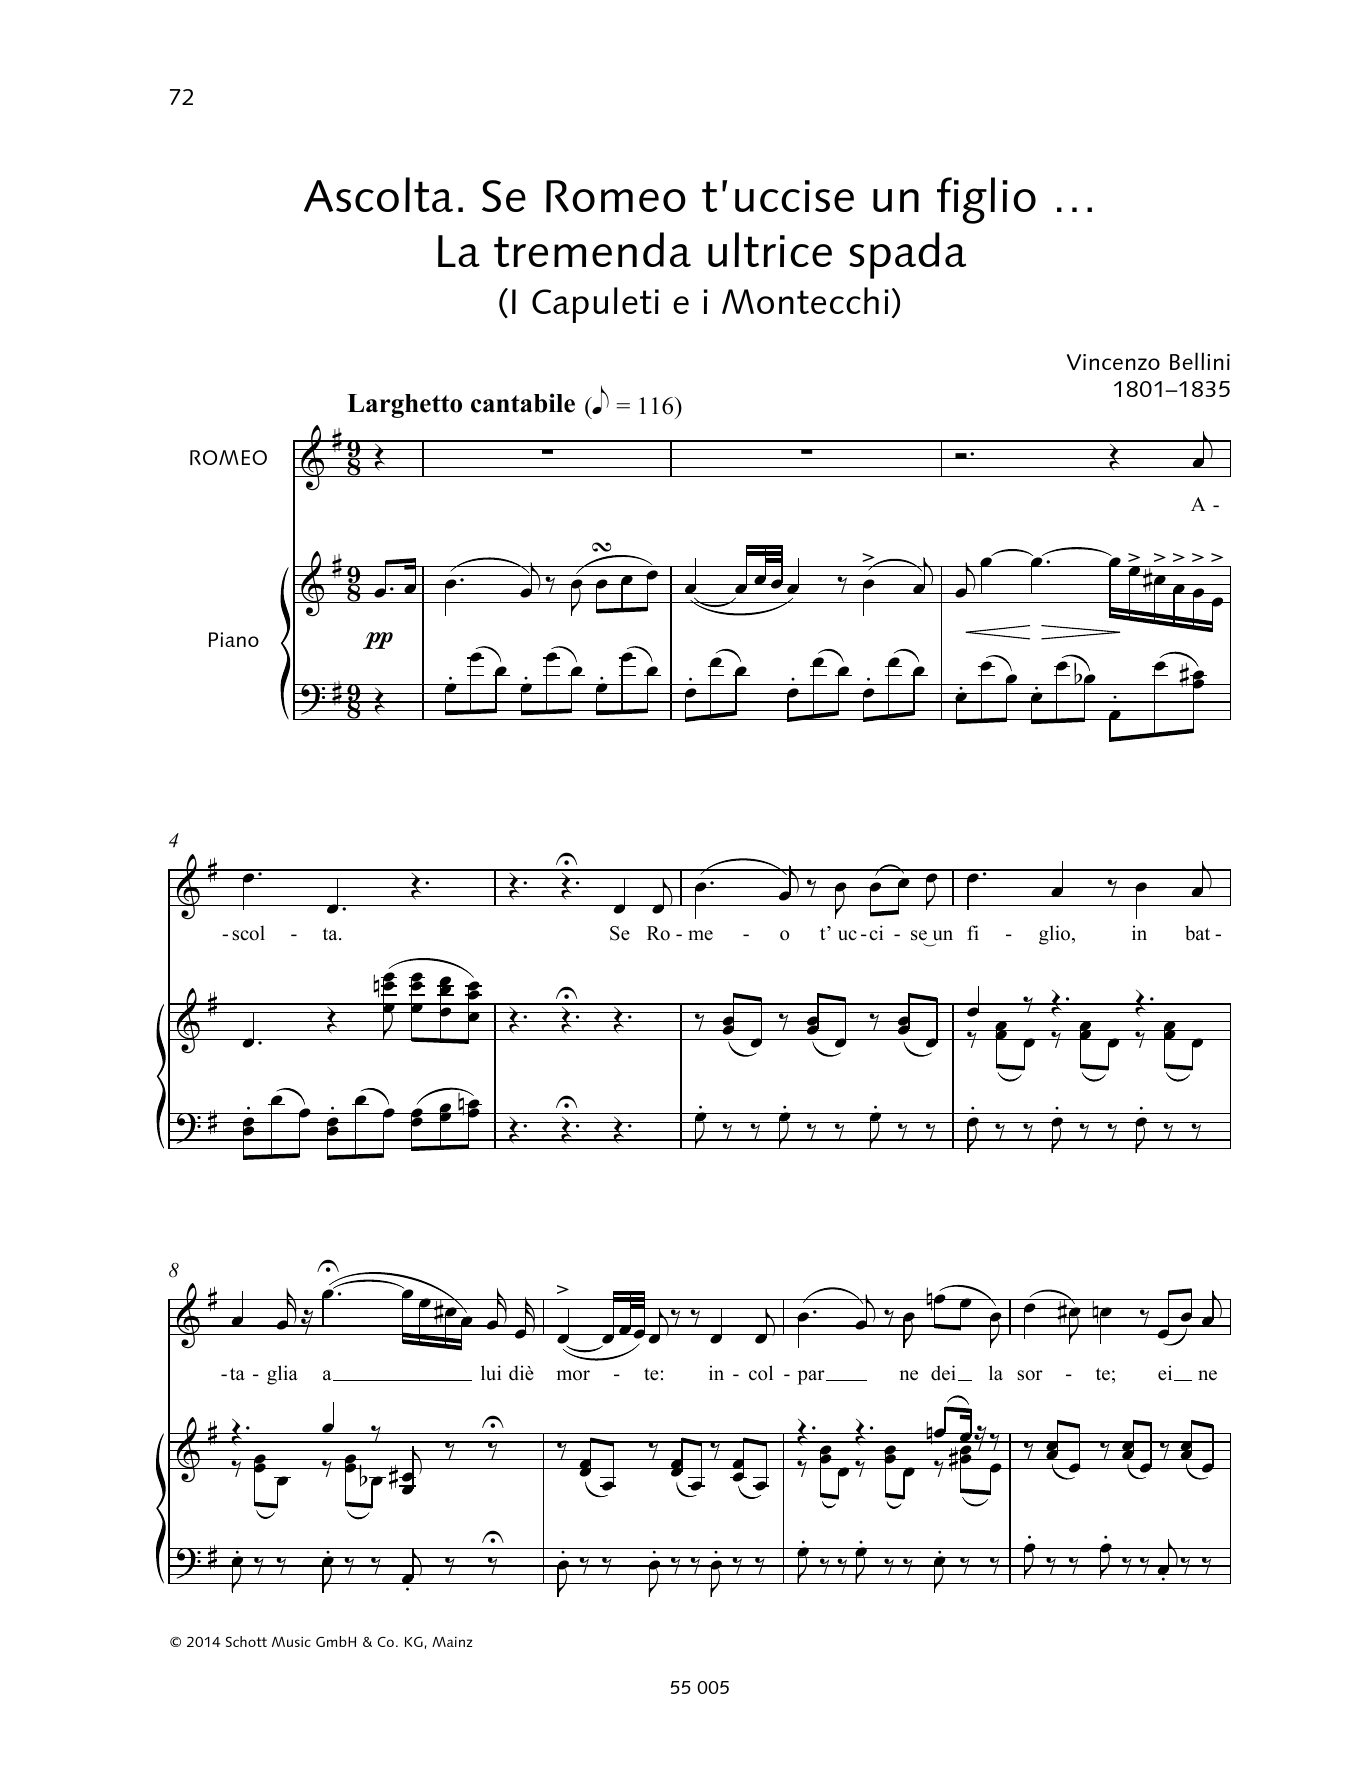 Download Vincenzo Bellini Ascolta. Se Romeo t'uccise un figlio... La tremenda ultrice spada Sheet Music and learn how to play Piano & Vocal PDF digital score in minutes